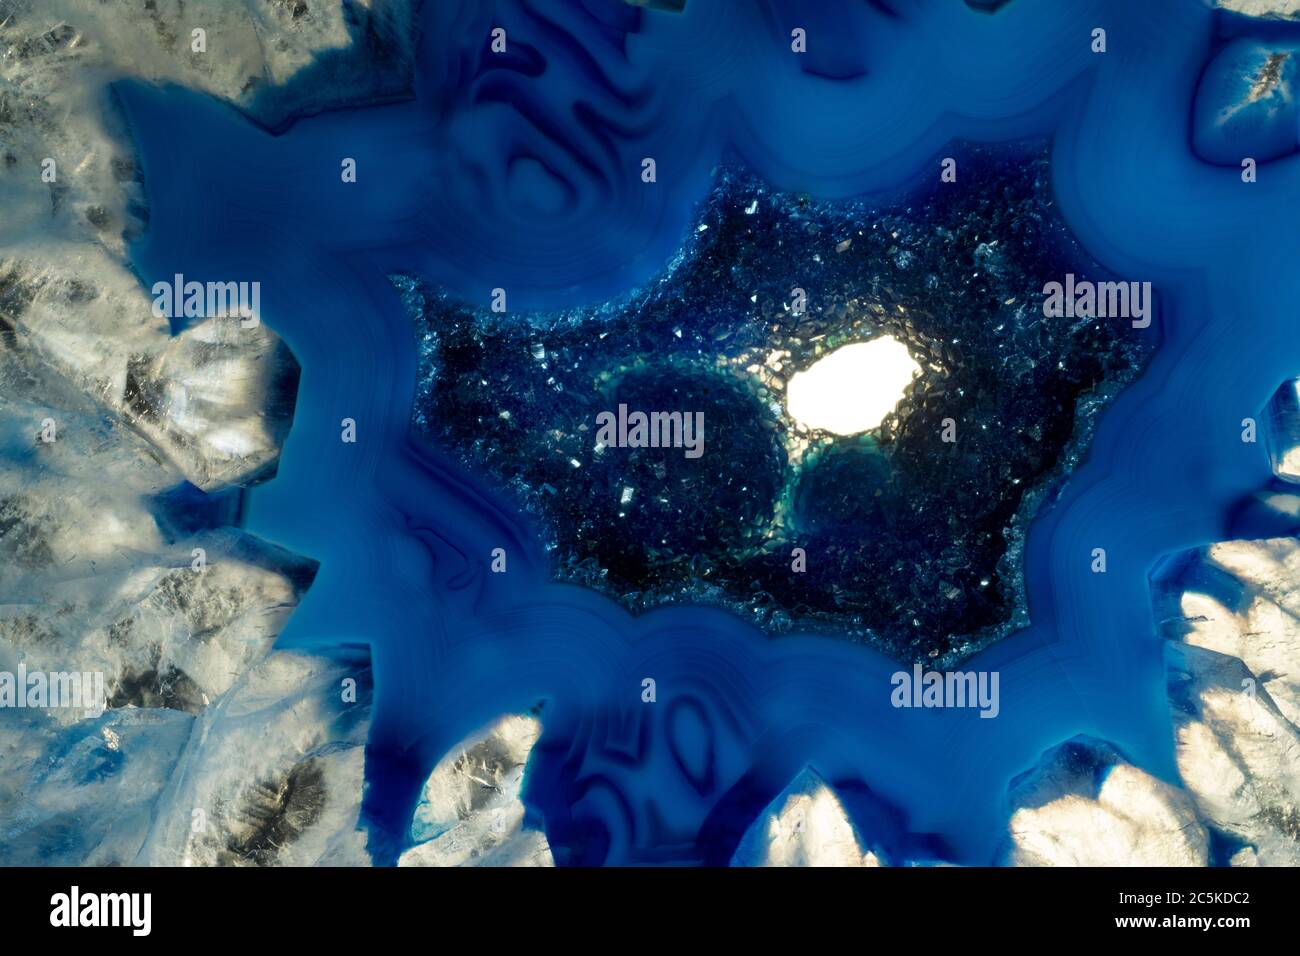 Macro foto di una roccia di agata blu e bianca. Ho illuminato i cristalli per far rischiare le texture minerali e i colori blu. Foto Stock